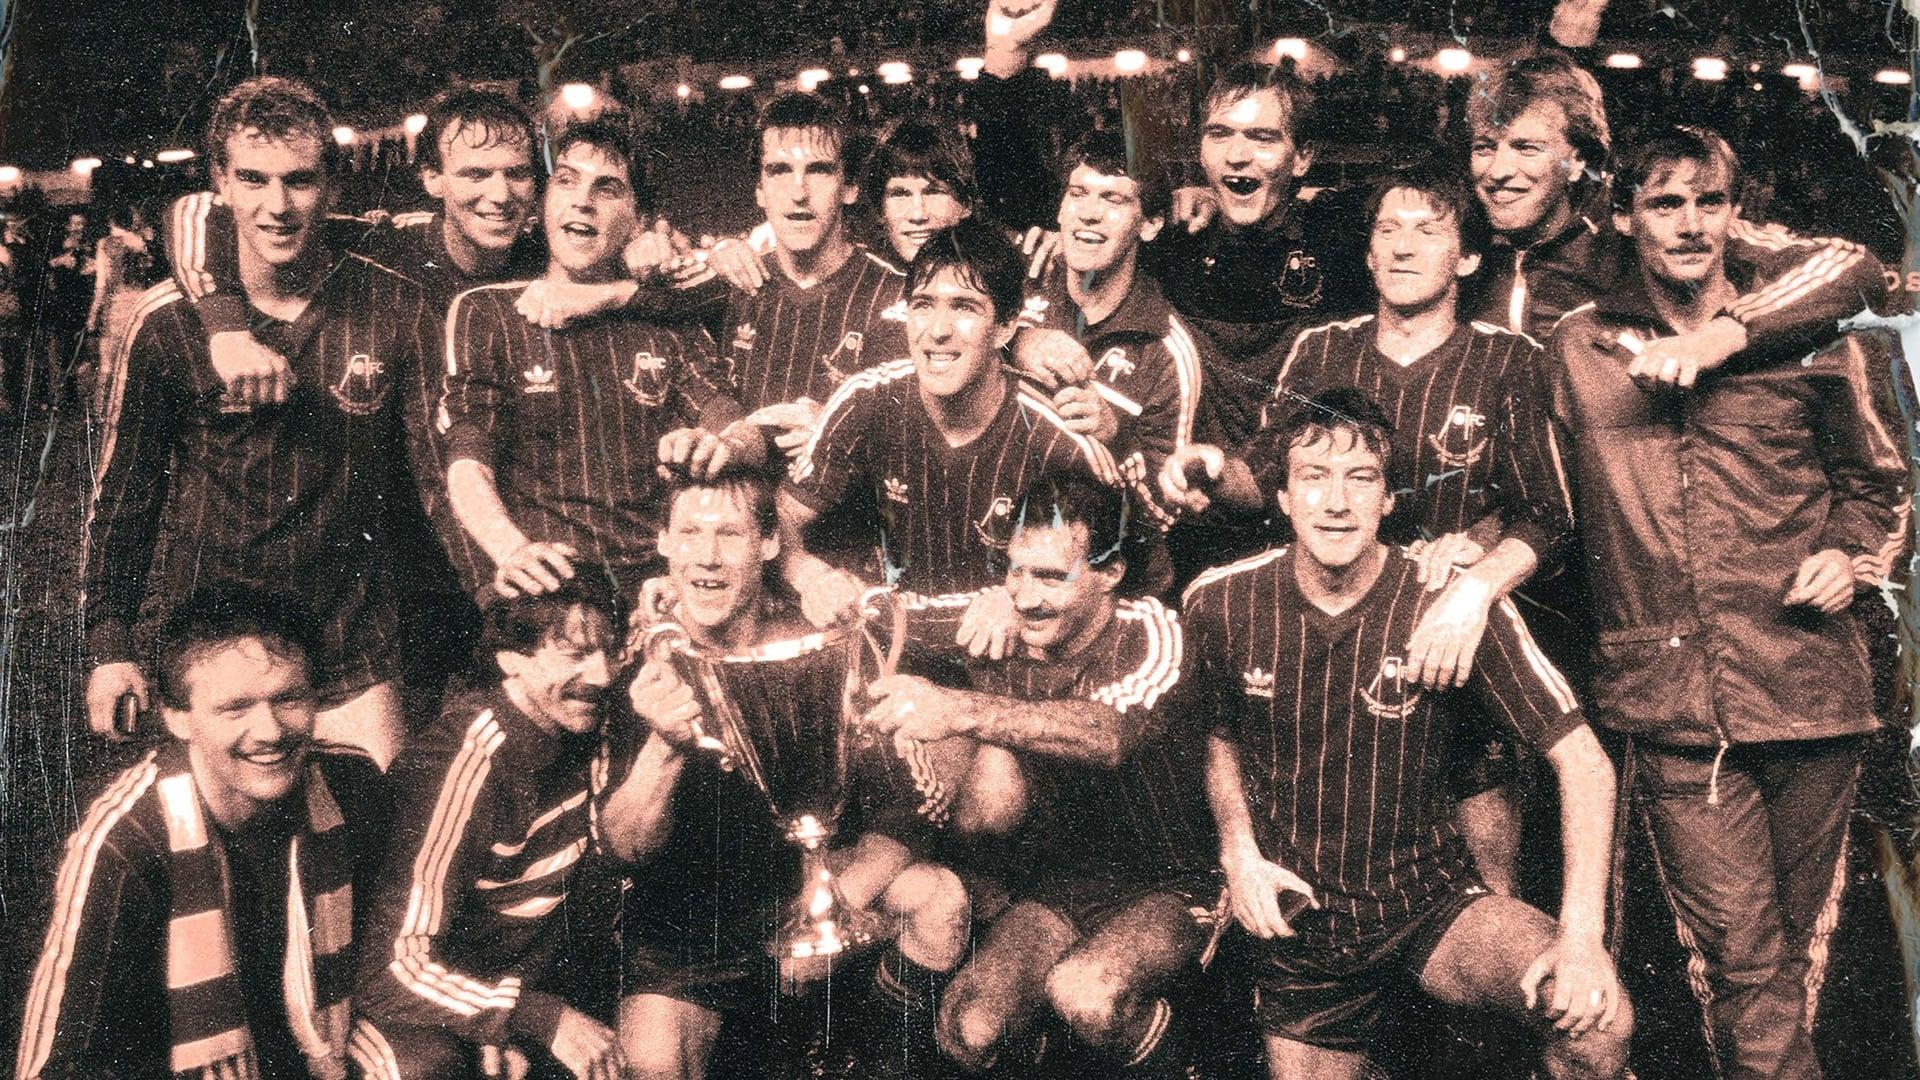 Aberdeen '83: Once in a Lifetime backdrop